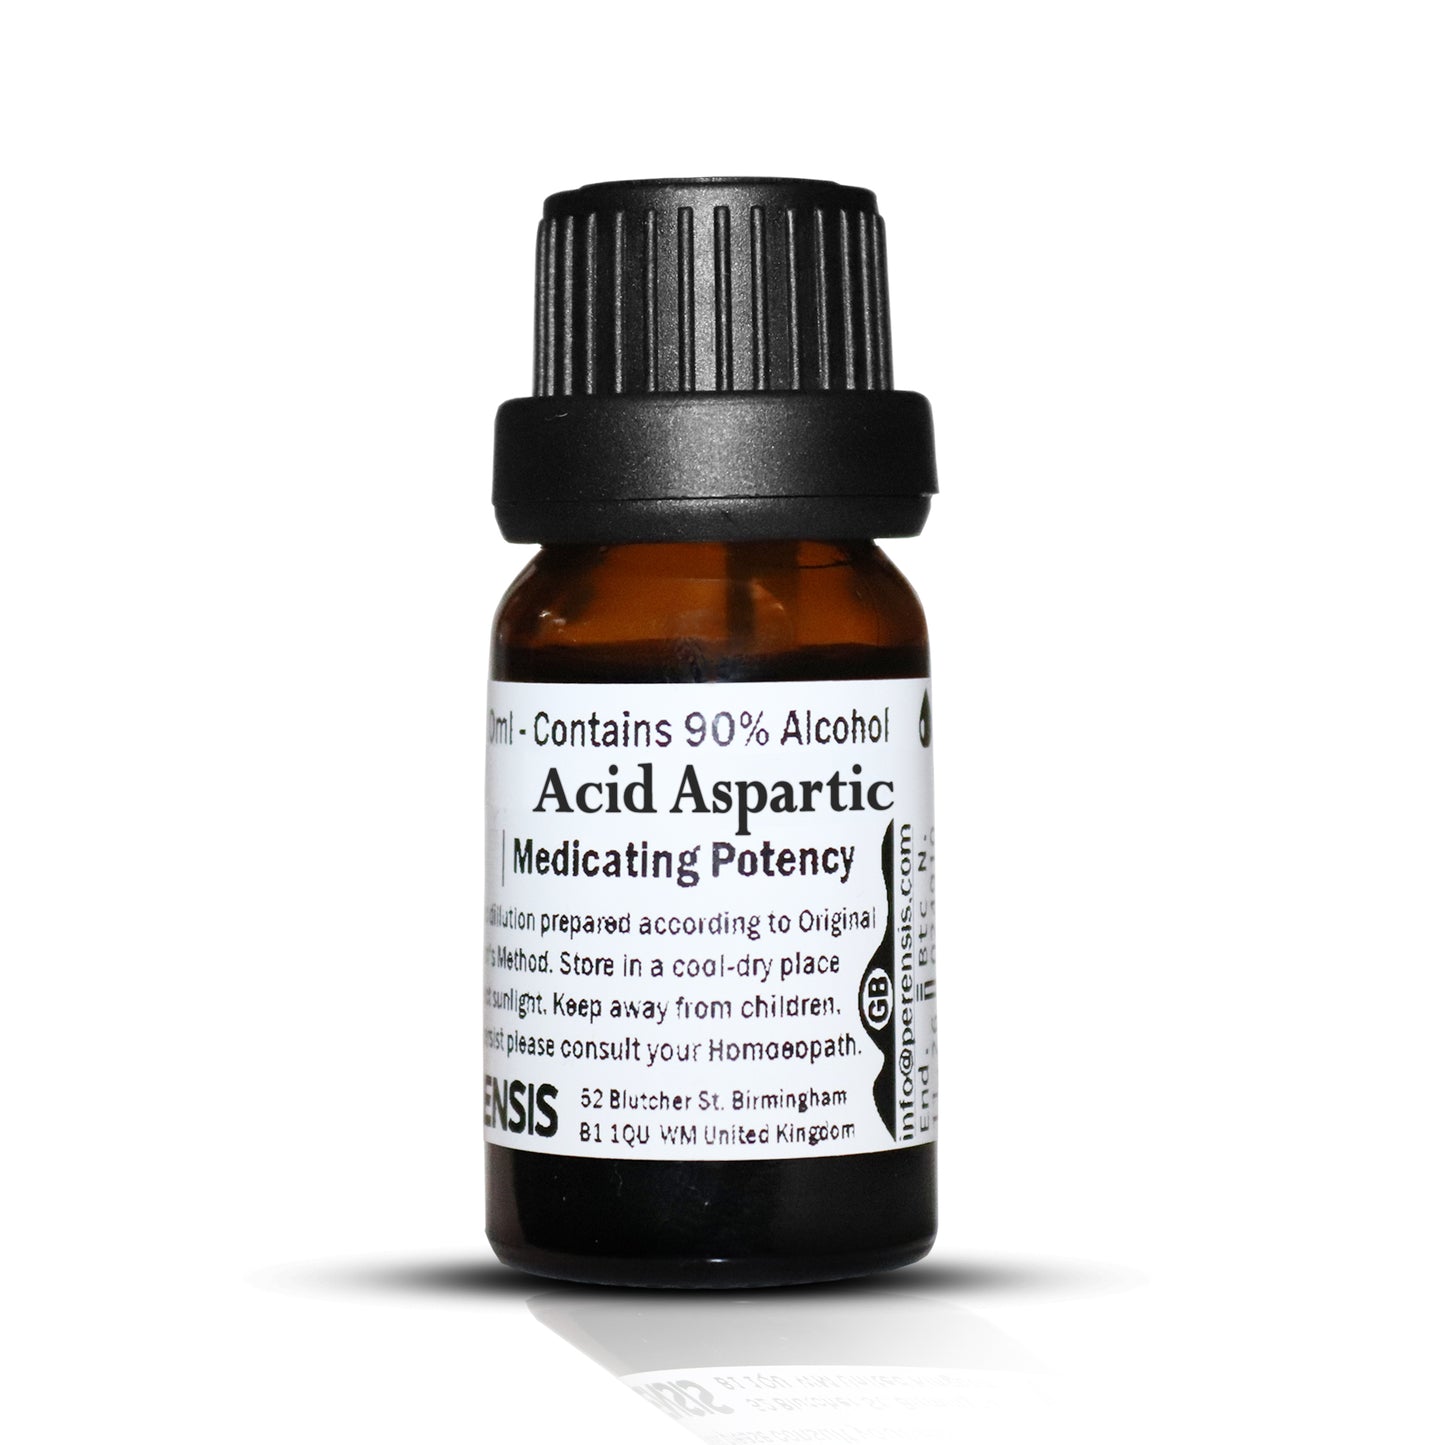 Acid Aspartic